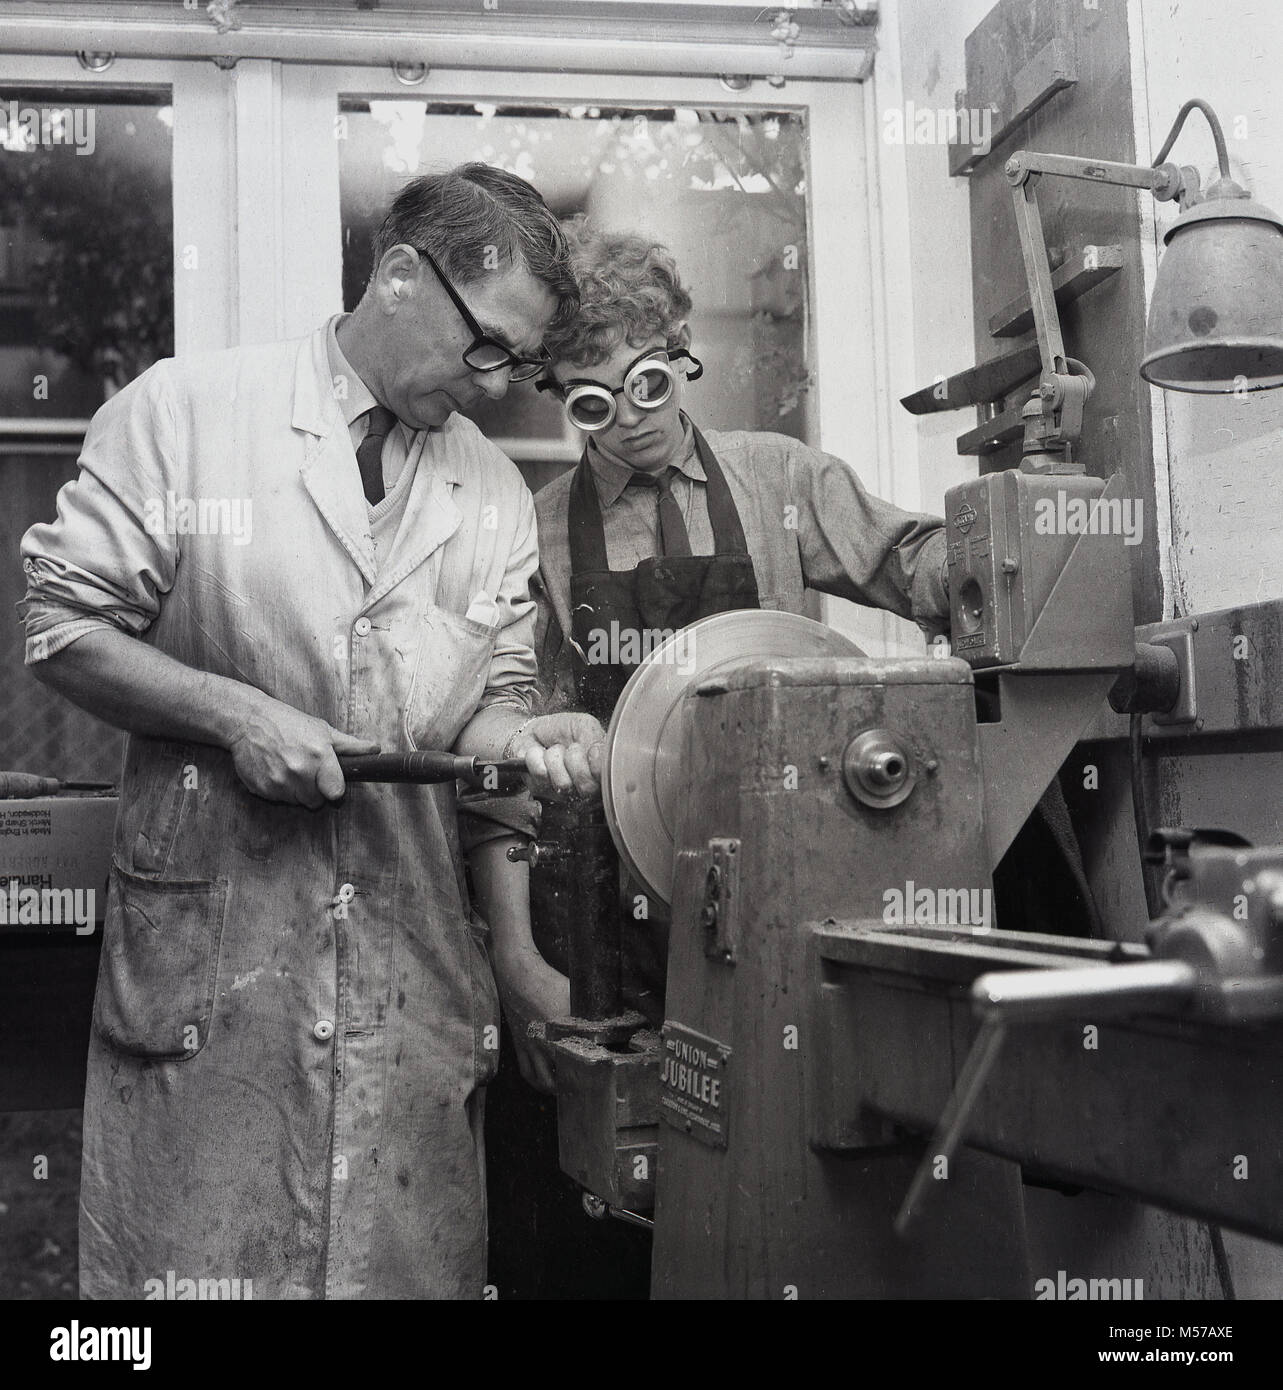 1968, historique, dans le sud de Londres, en Angleterre, les jeunes adolescents à une pension dans l'état d'un atelier avec un professeur à l'aide d'une latte de métal au cours d'une classe. Banque D'Images